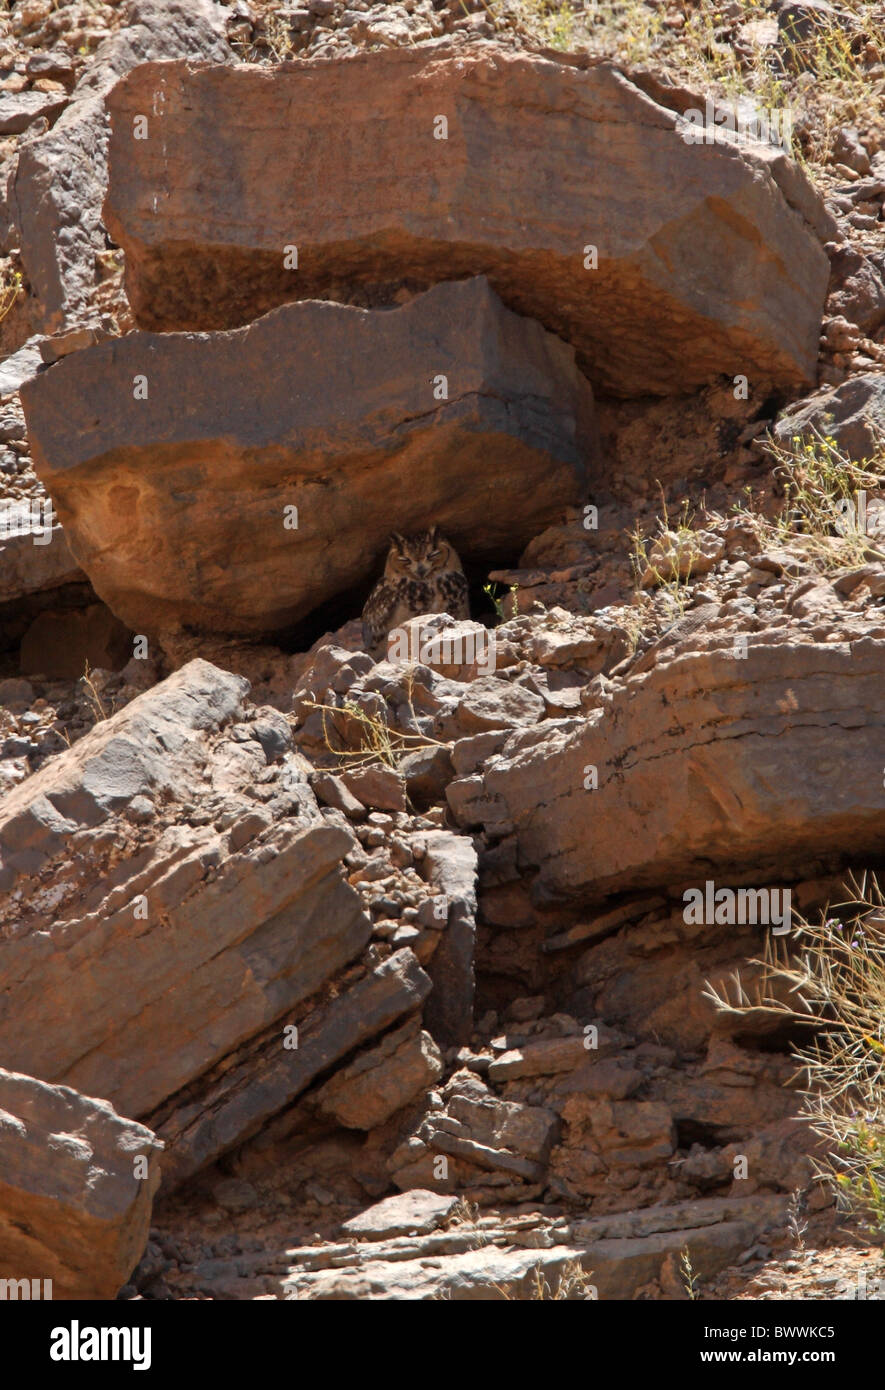 Le pharaon d'EAGLE-owl (Bubo ascalaphus ascalaphus) adulte, perché sur la pente rocheuse, Maroc, avril Banque D'Images